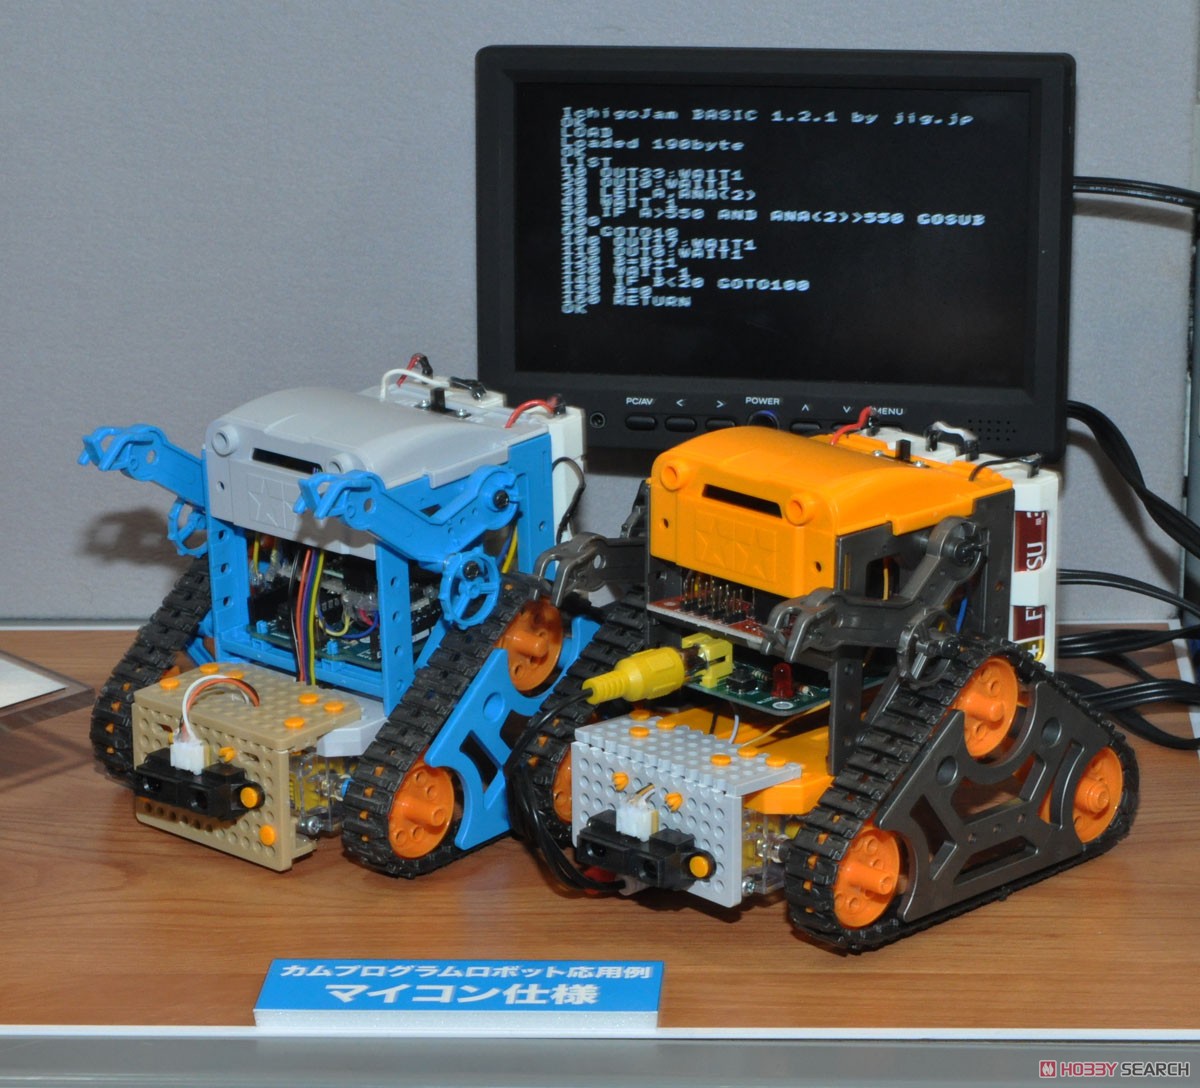 カムプログラムロボット工作セット (ガンメタル/オレンジ) (工作キット) その他の画像5